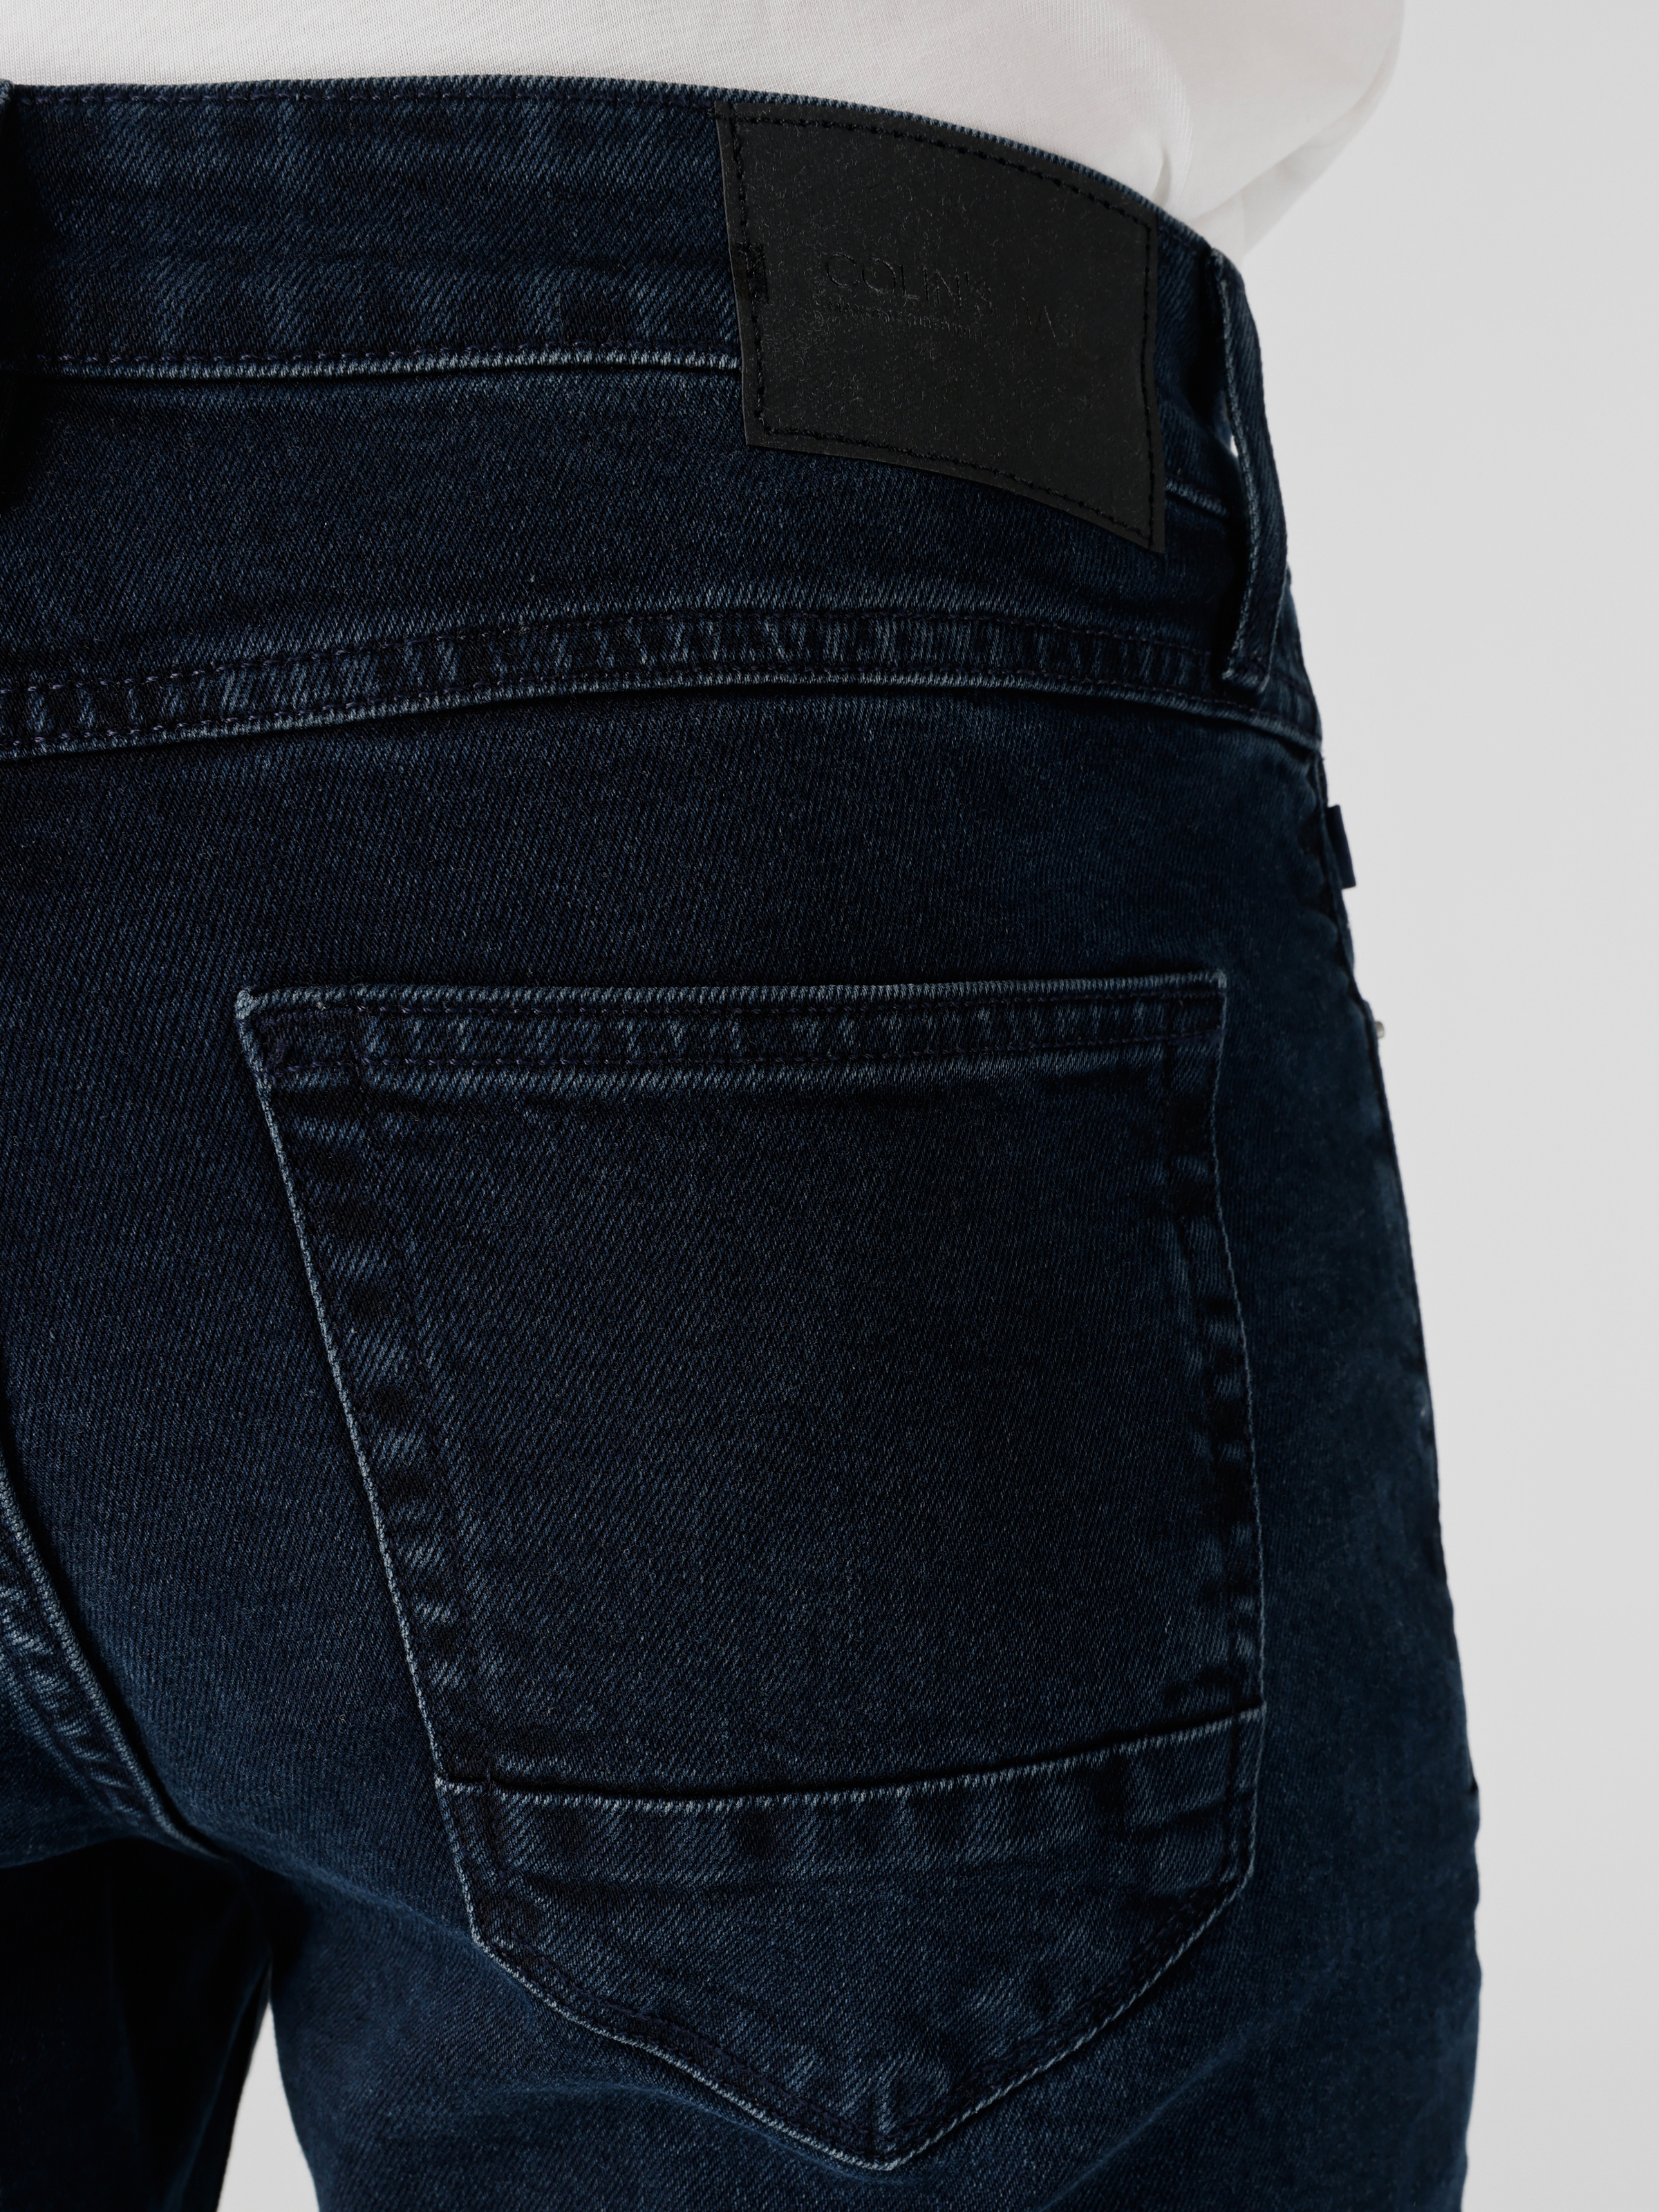 اعرض التفاصيل لـ 041 داني بنطال جينز ضيق منخفض الخصر وضيق الساق باللون الأزرق الداكن للرجال